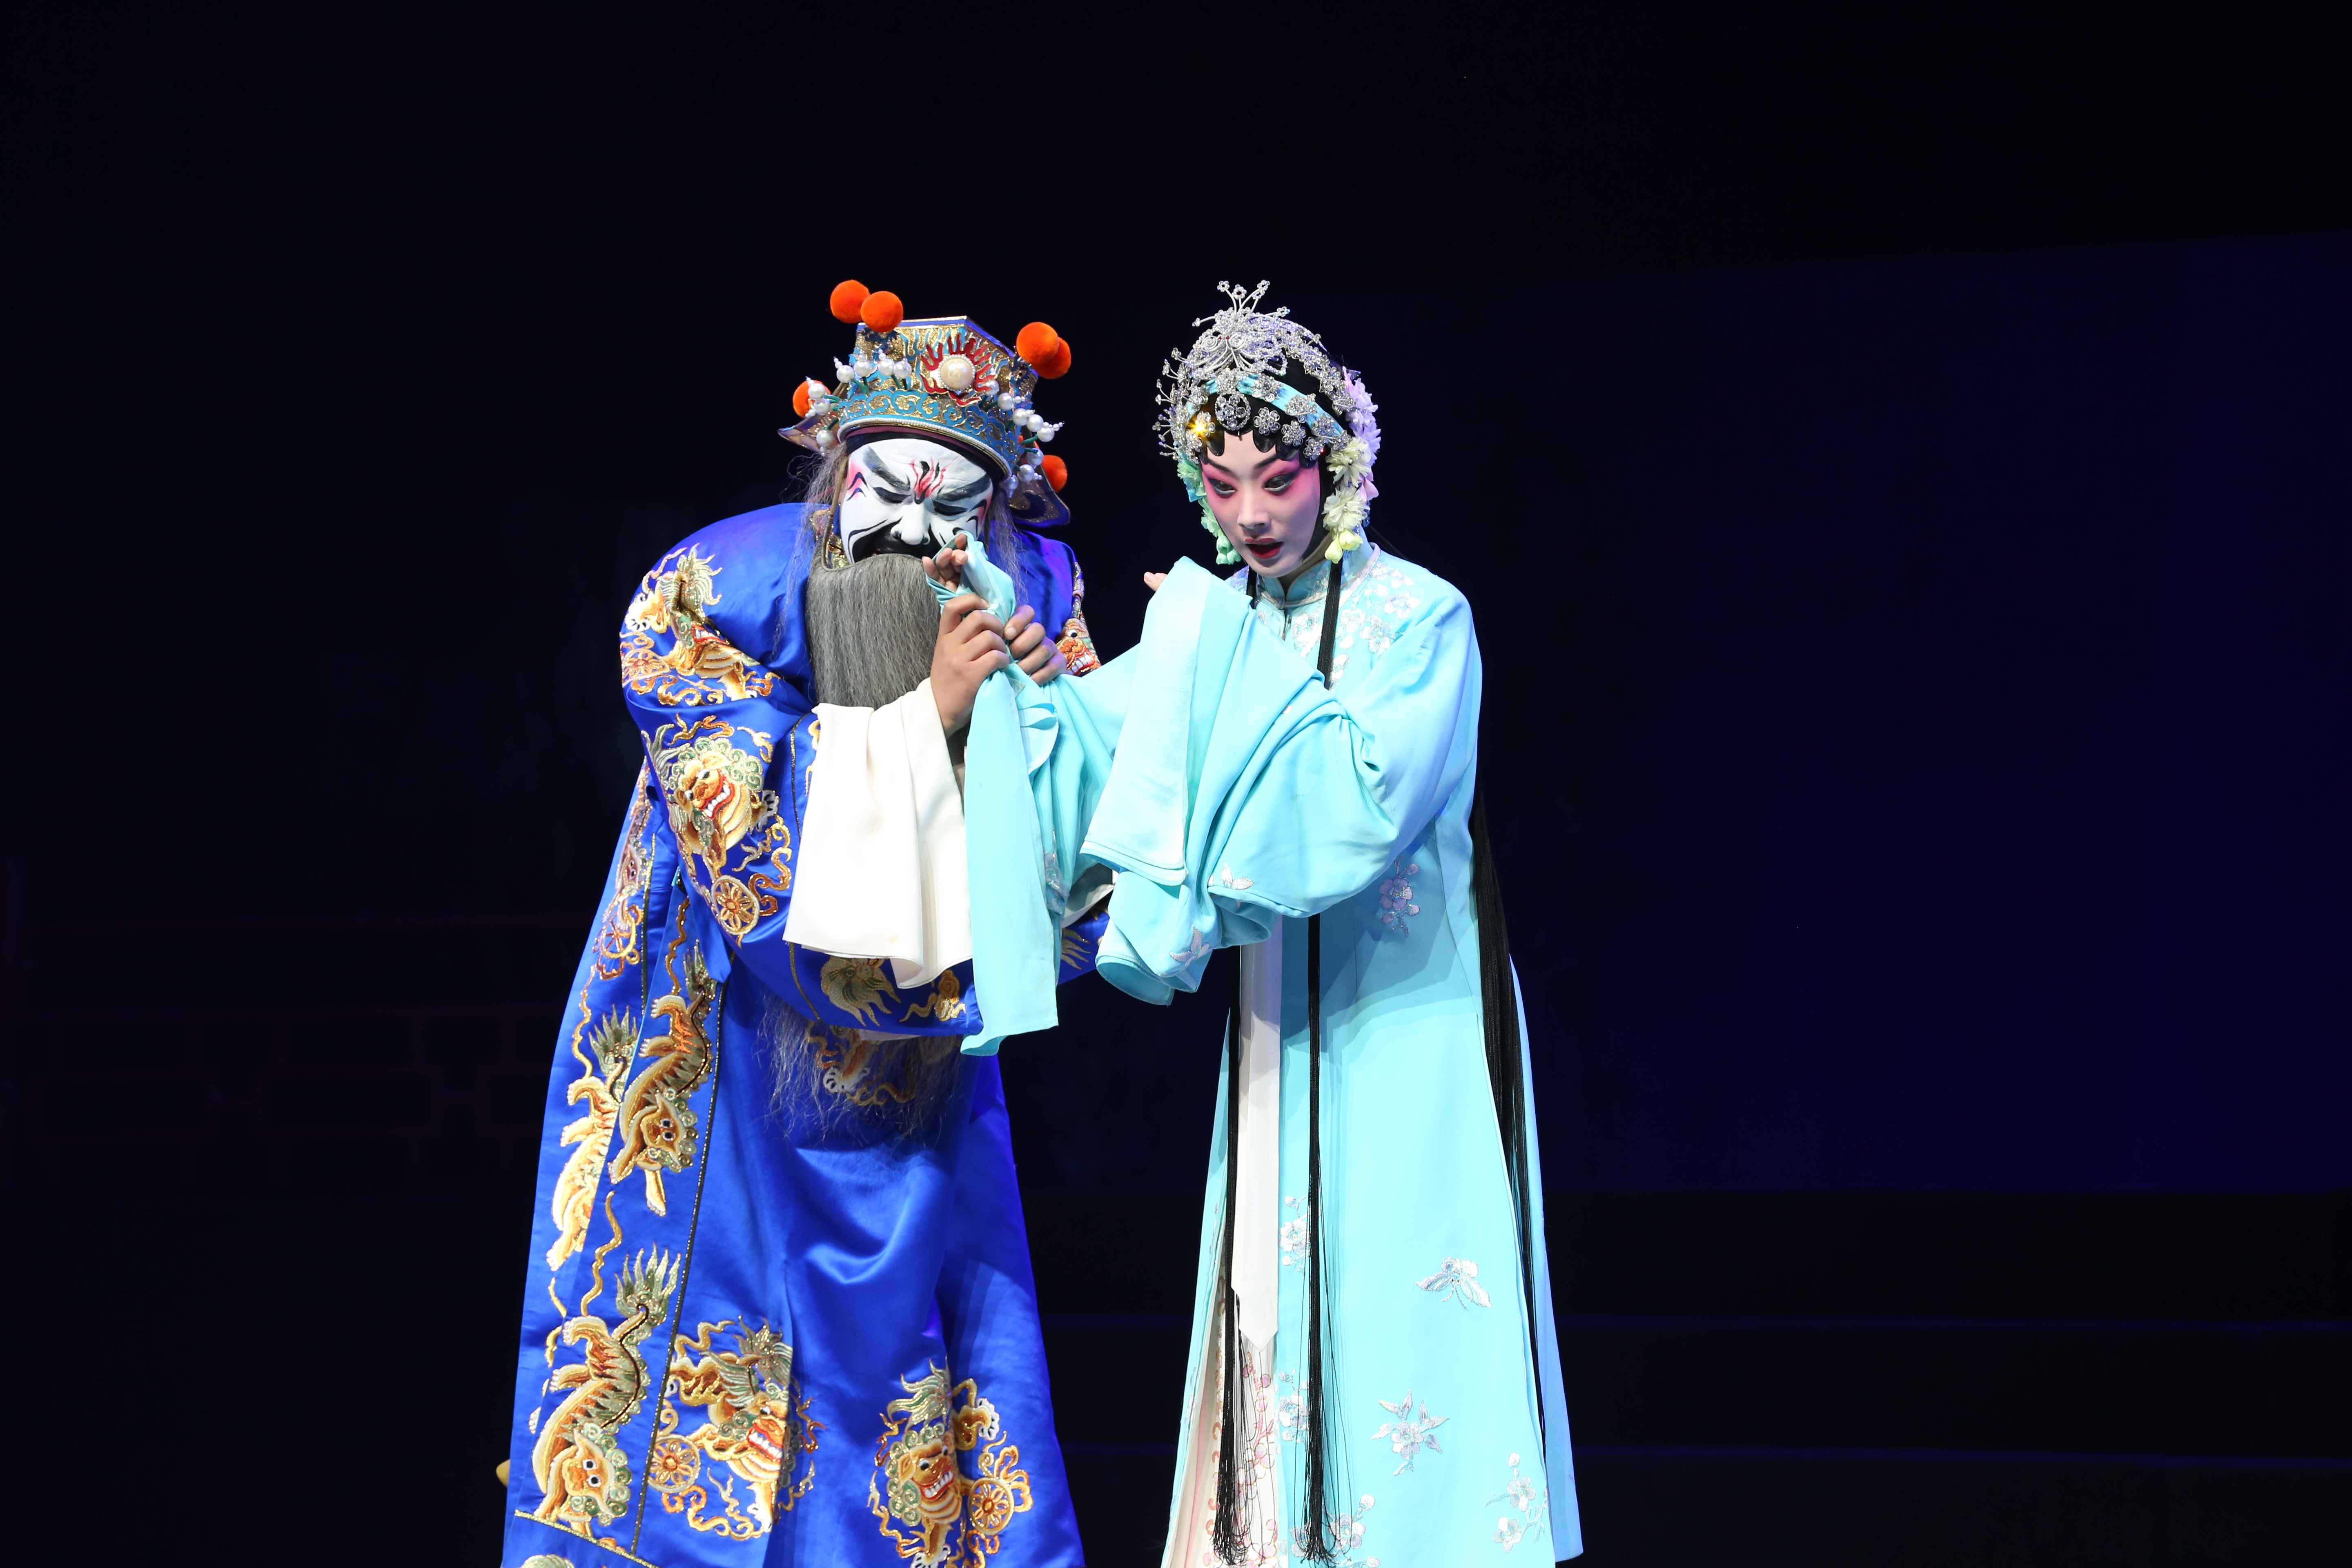 《红梅记》搬上舞台已将近十年,为了锻炼青年演员,河南豫剧院青年团不